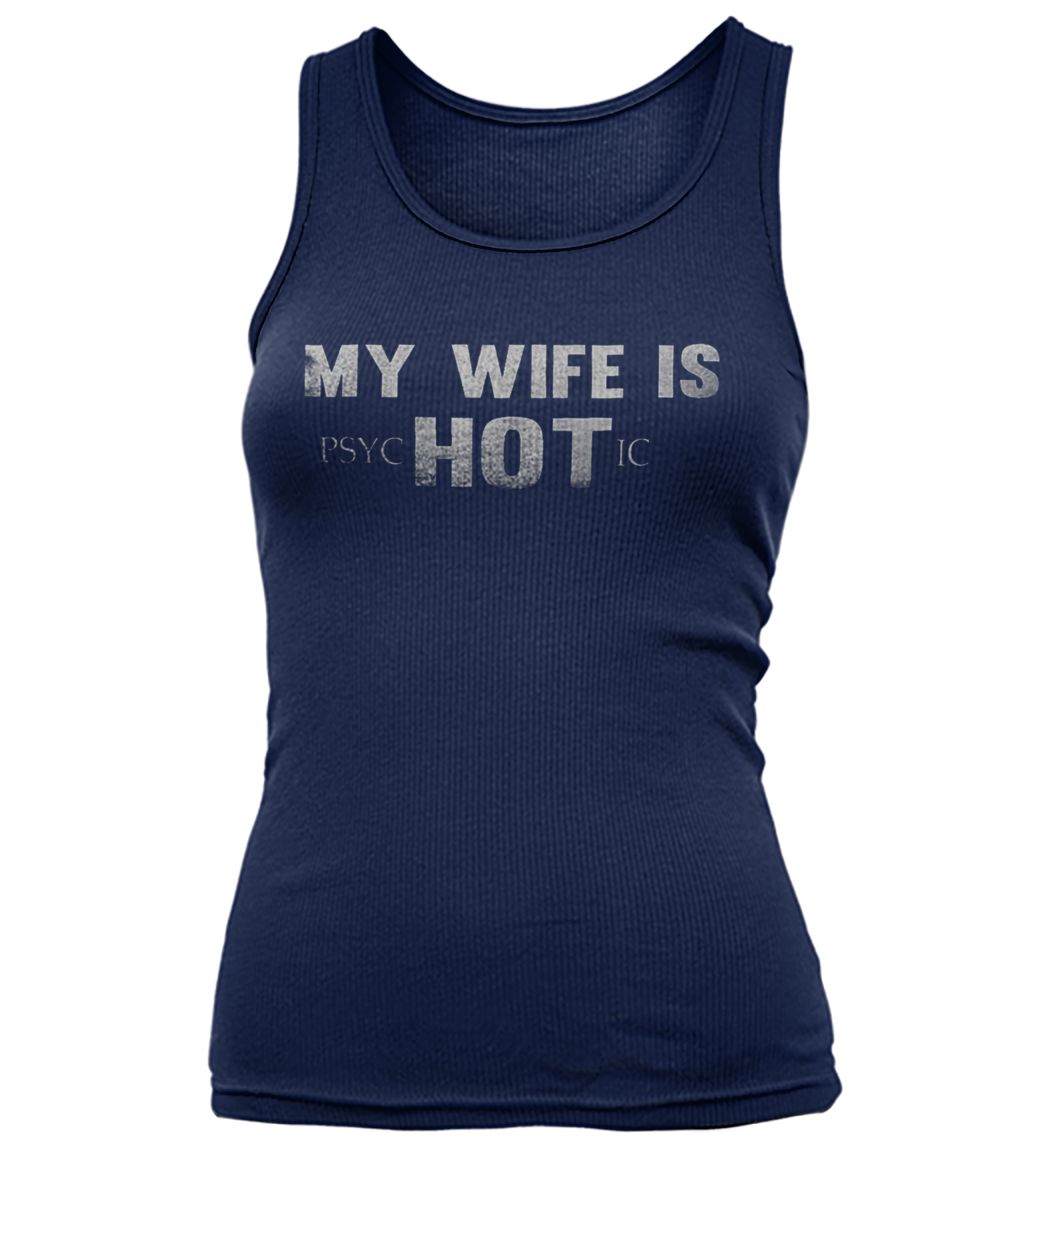 My wife is psychotic hot women's tank top